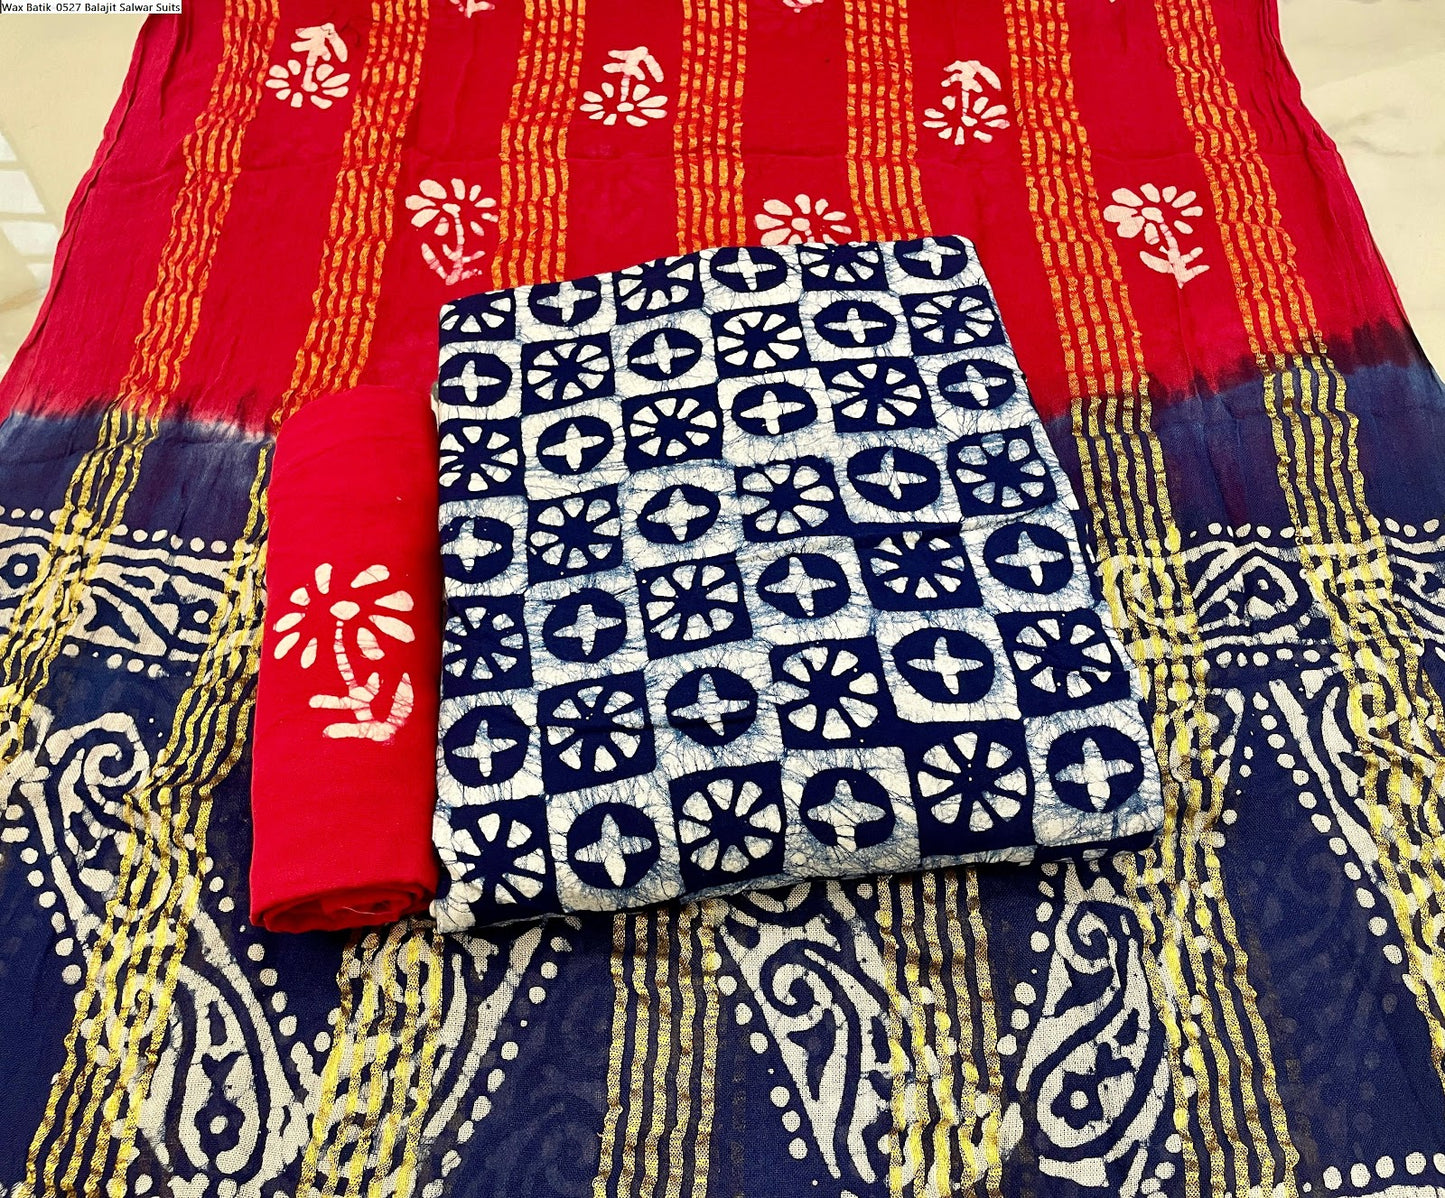 Wax Batik-0527 Balajit Rayon Salwar Suits Exporter India